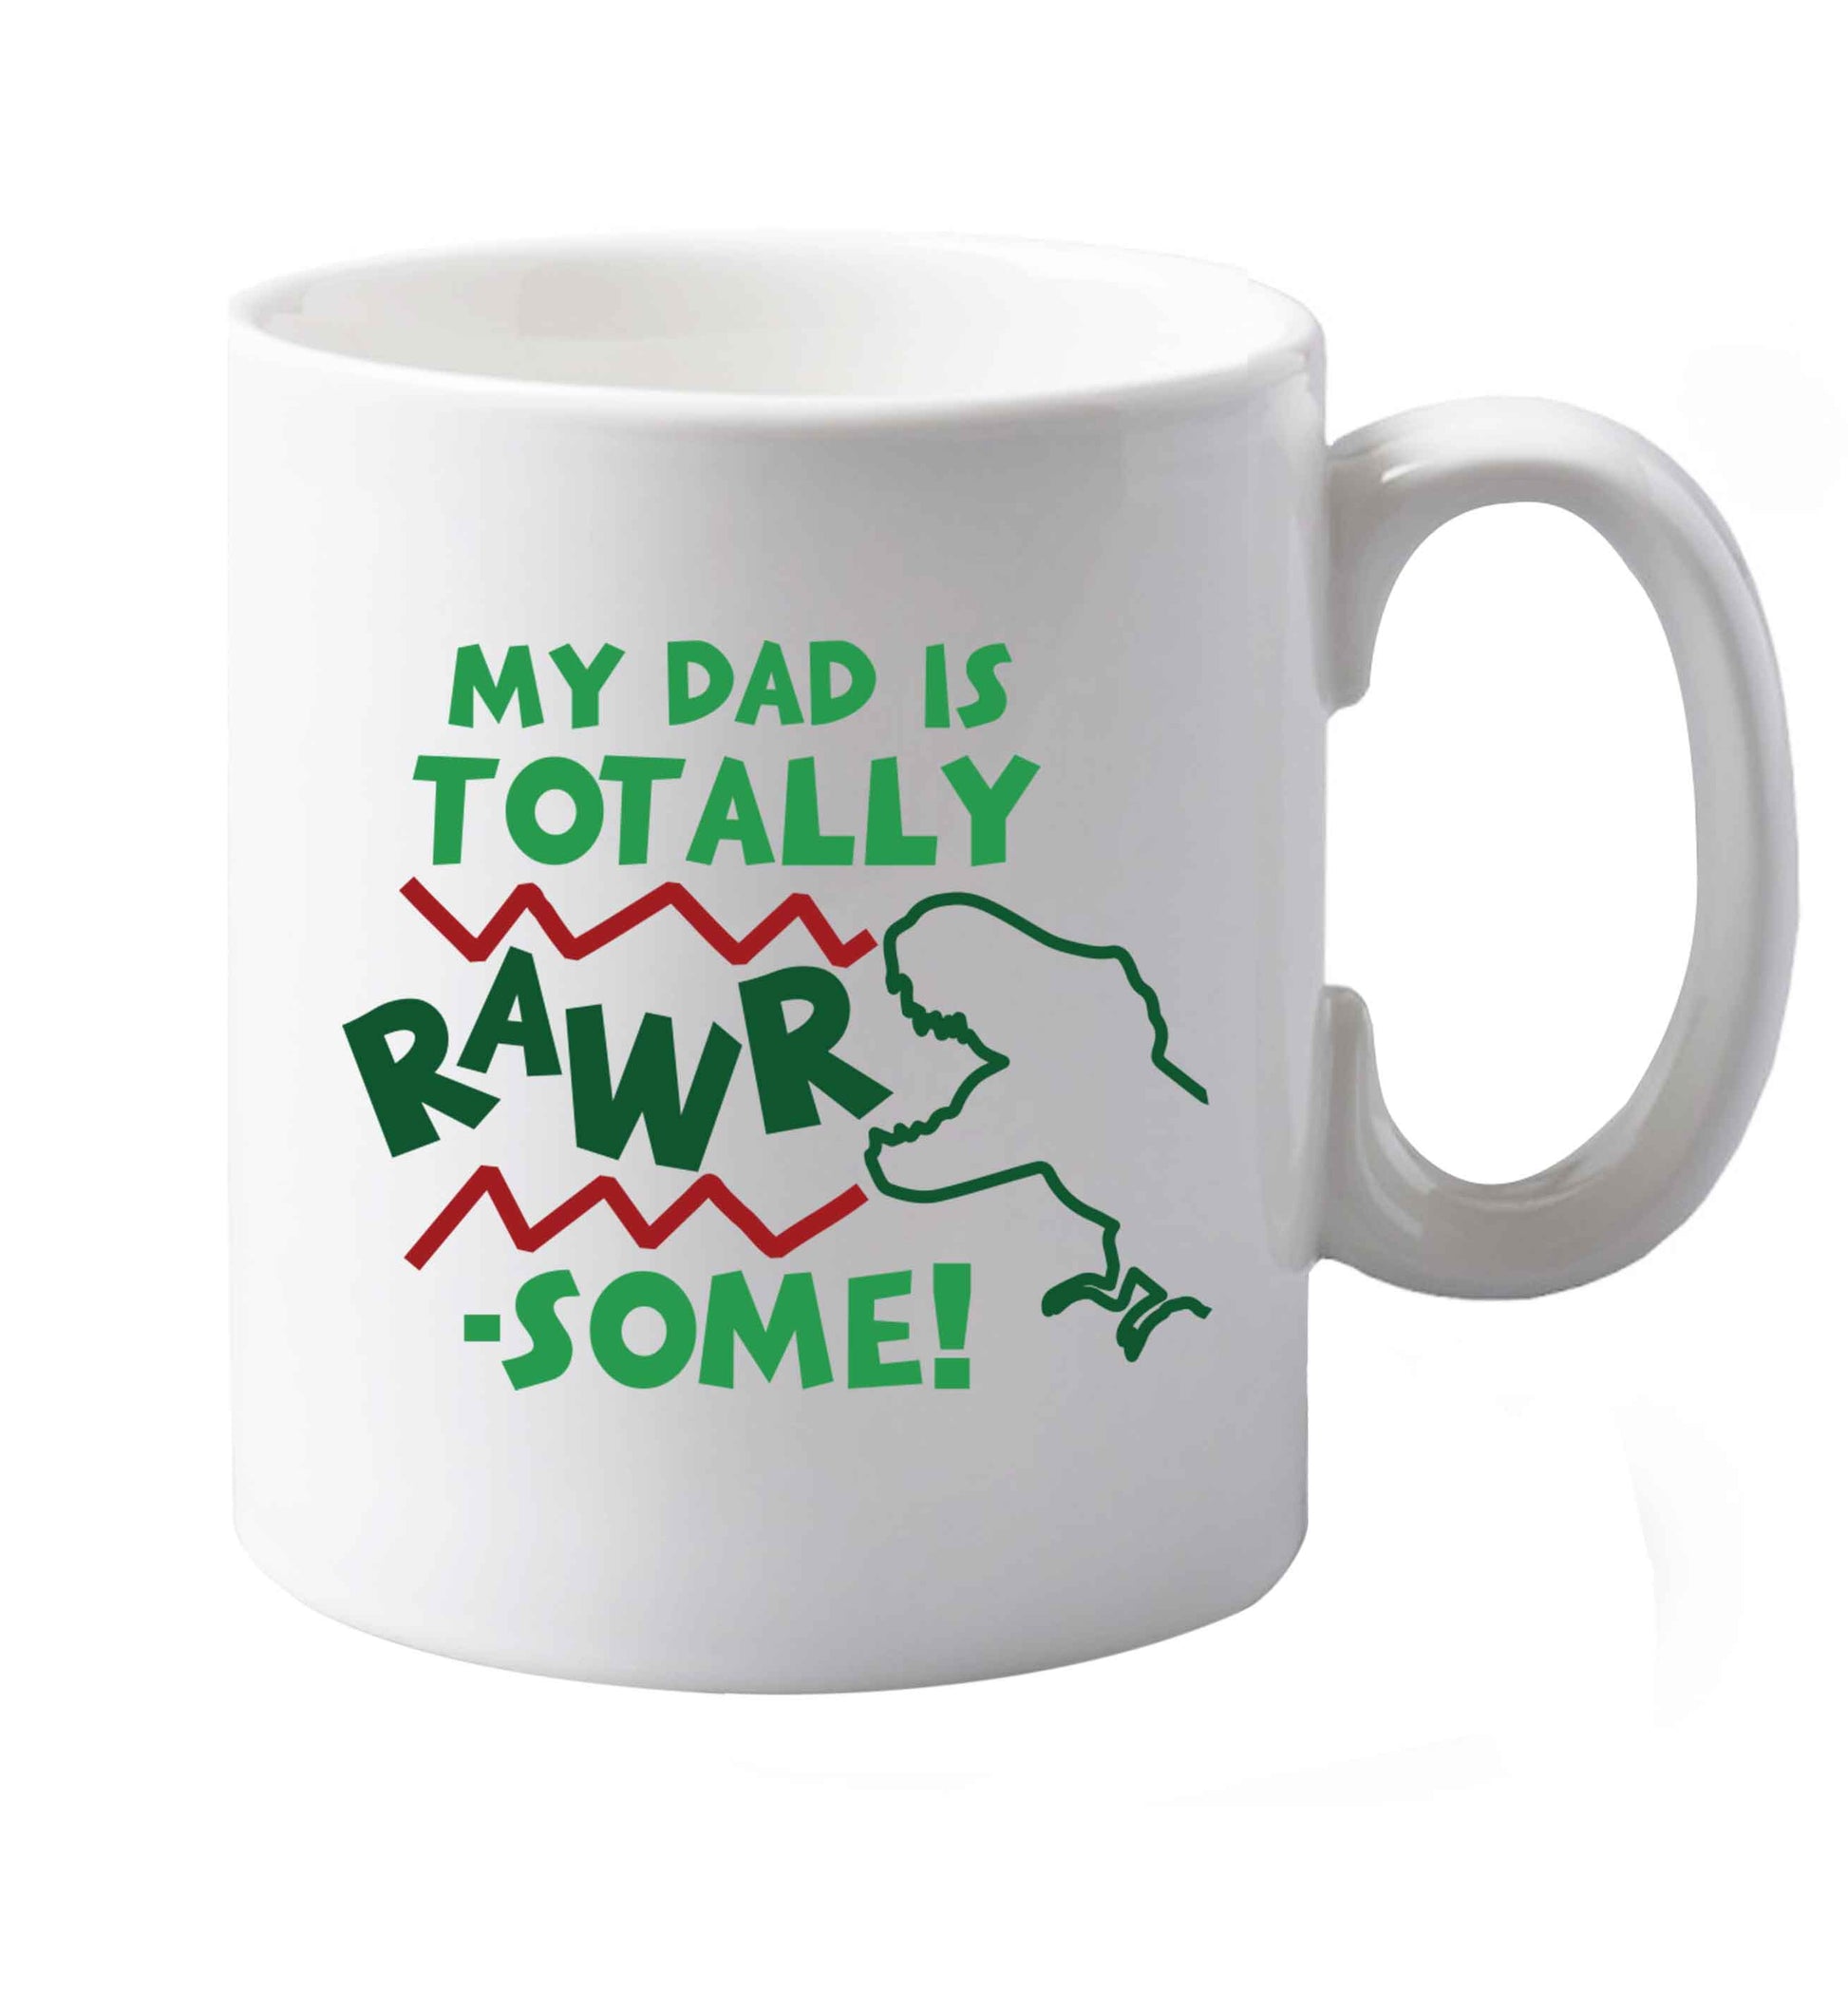 10 oz My dad is totally rawrsome ceramic mug both sides